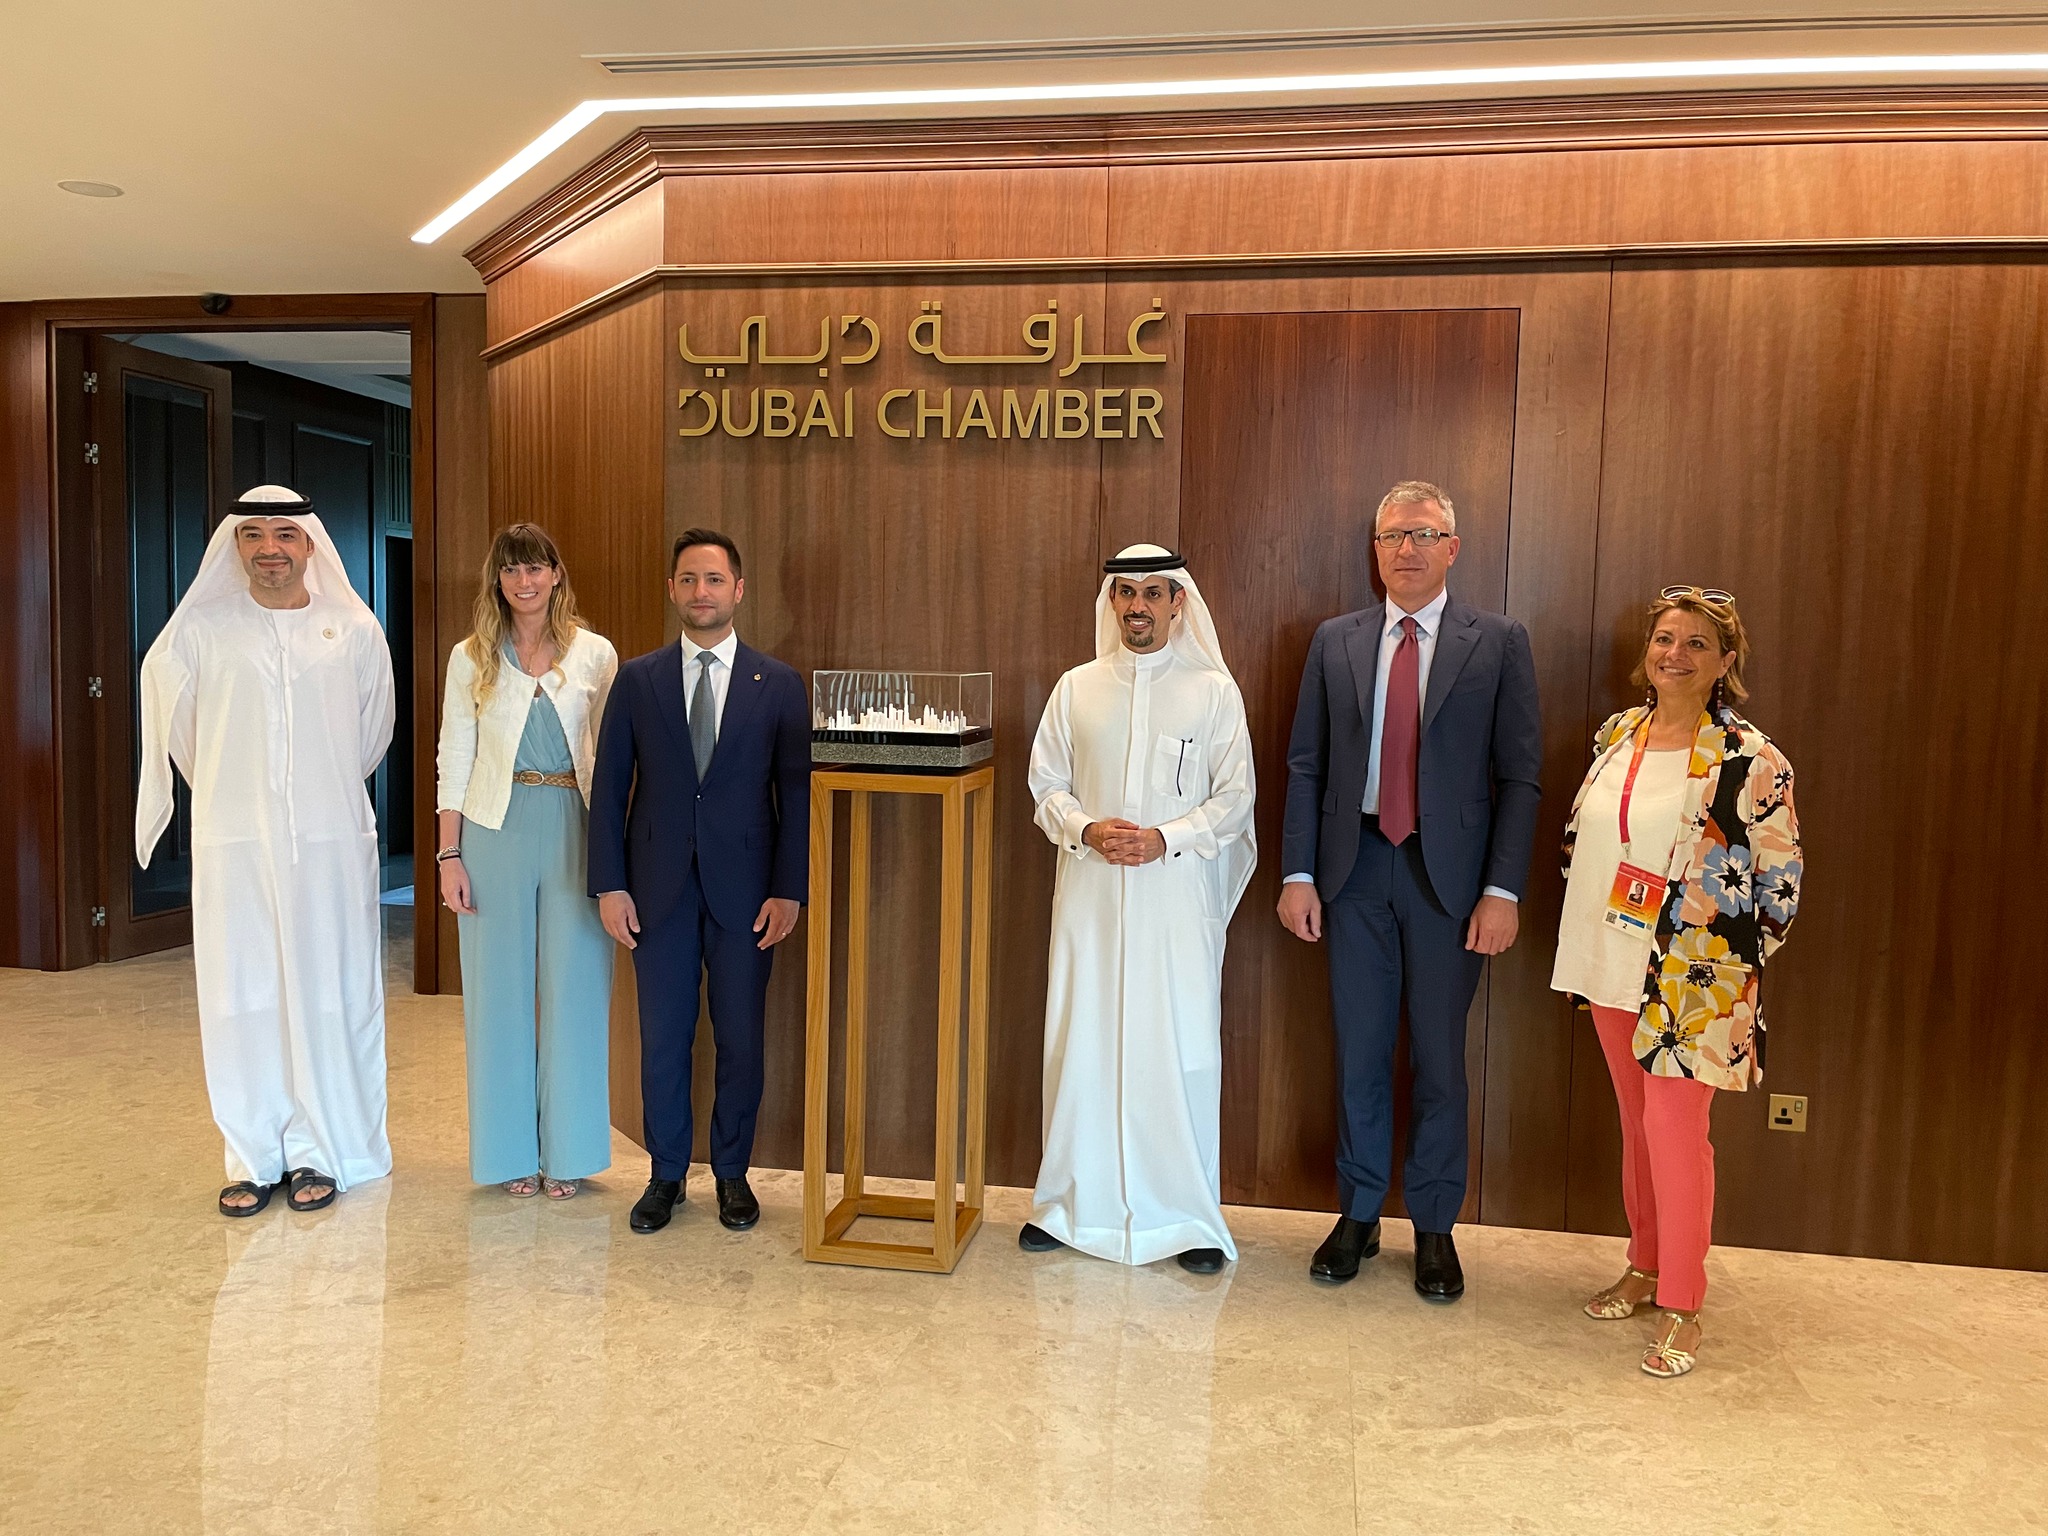 La segreteria di Stato per l’Industria: “Promosse le relazioni economiche tra San Marino ed Emirati Arabi Uniti”